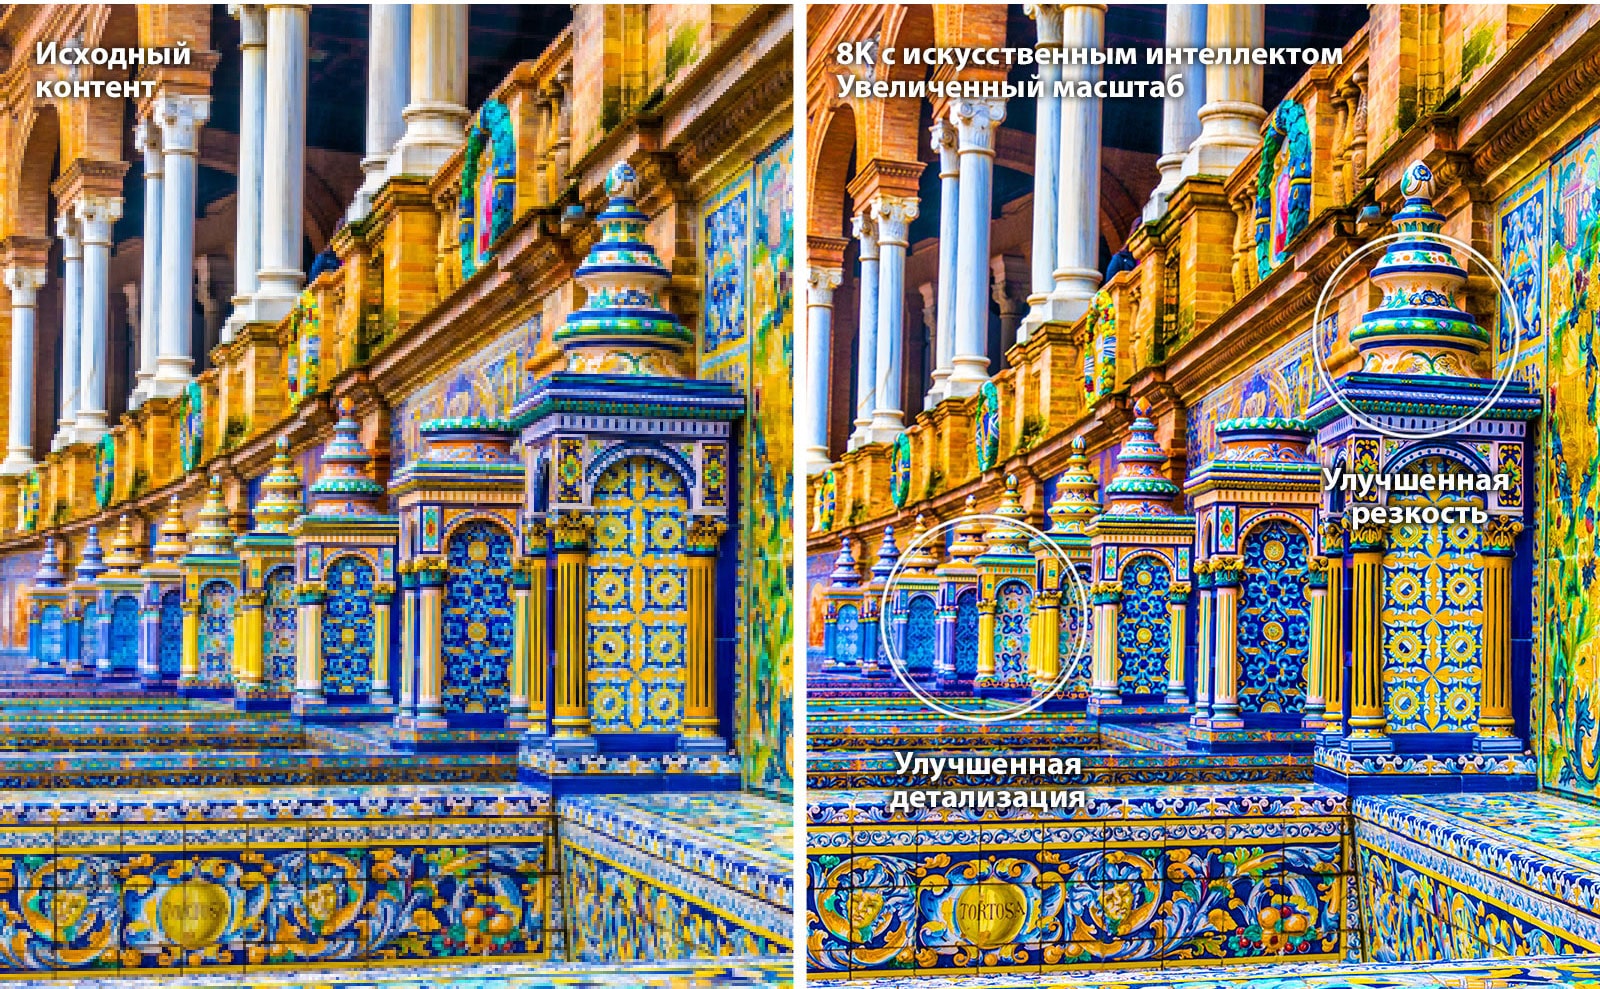 Расположенные рядом изображения с ярким зданием, выложенным мозаикой. Справа показан оригинал, а слева — изображение после увеличения масштаба AI 8K с улучшенной детализацией и резкостью.